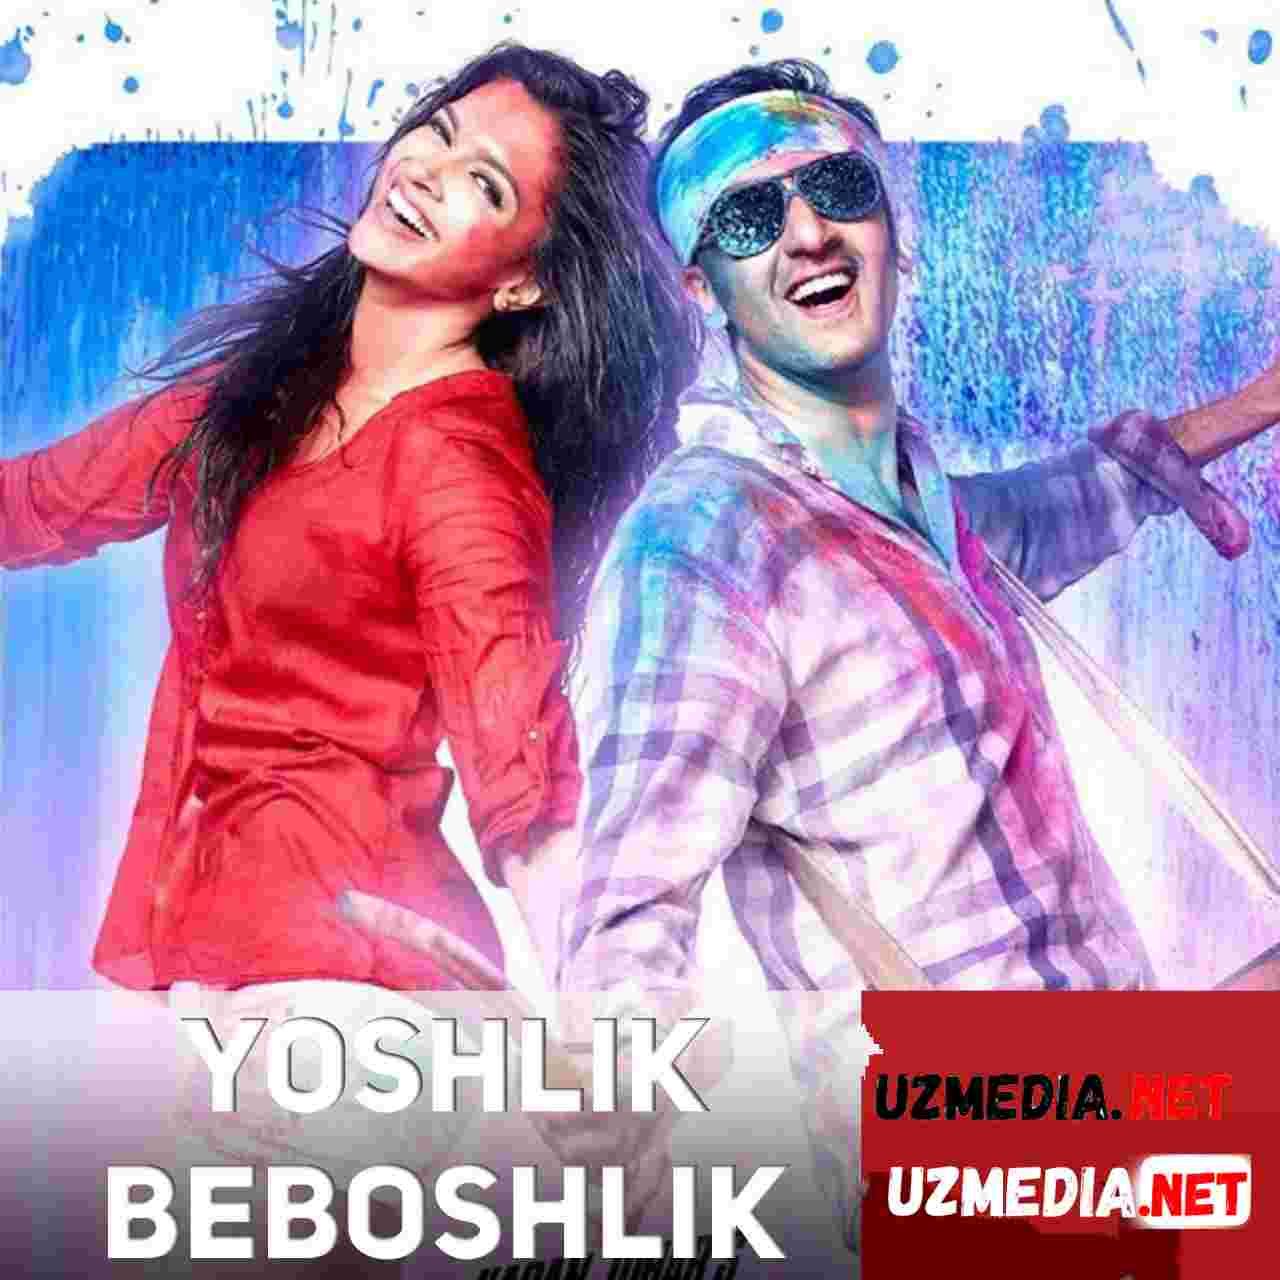 Yoshlik beboshlik / Yoshlik zavqi Hind kino Uzbek tilida O'zbekcha tarjima kino 2013 HD tas-ix skachat